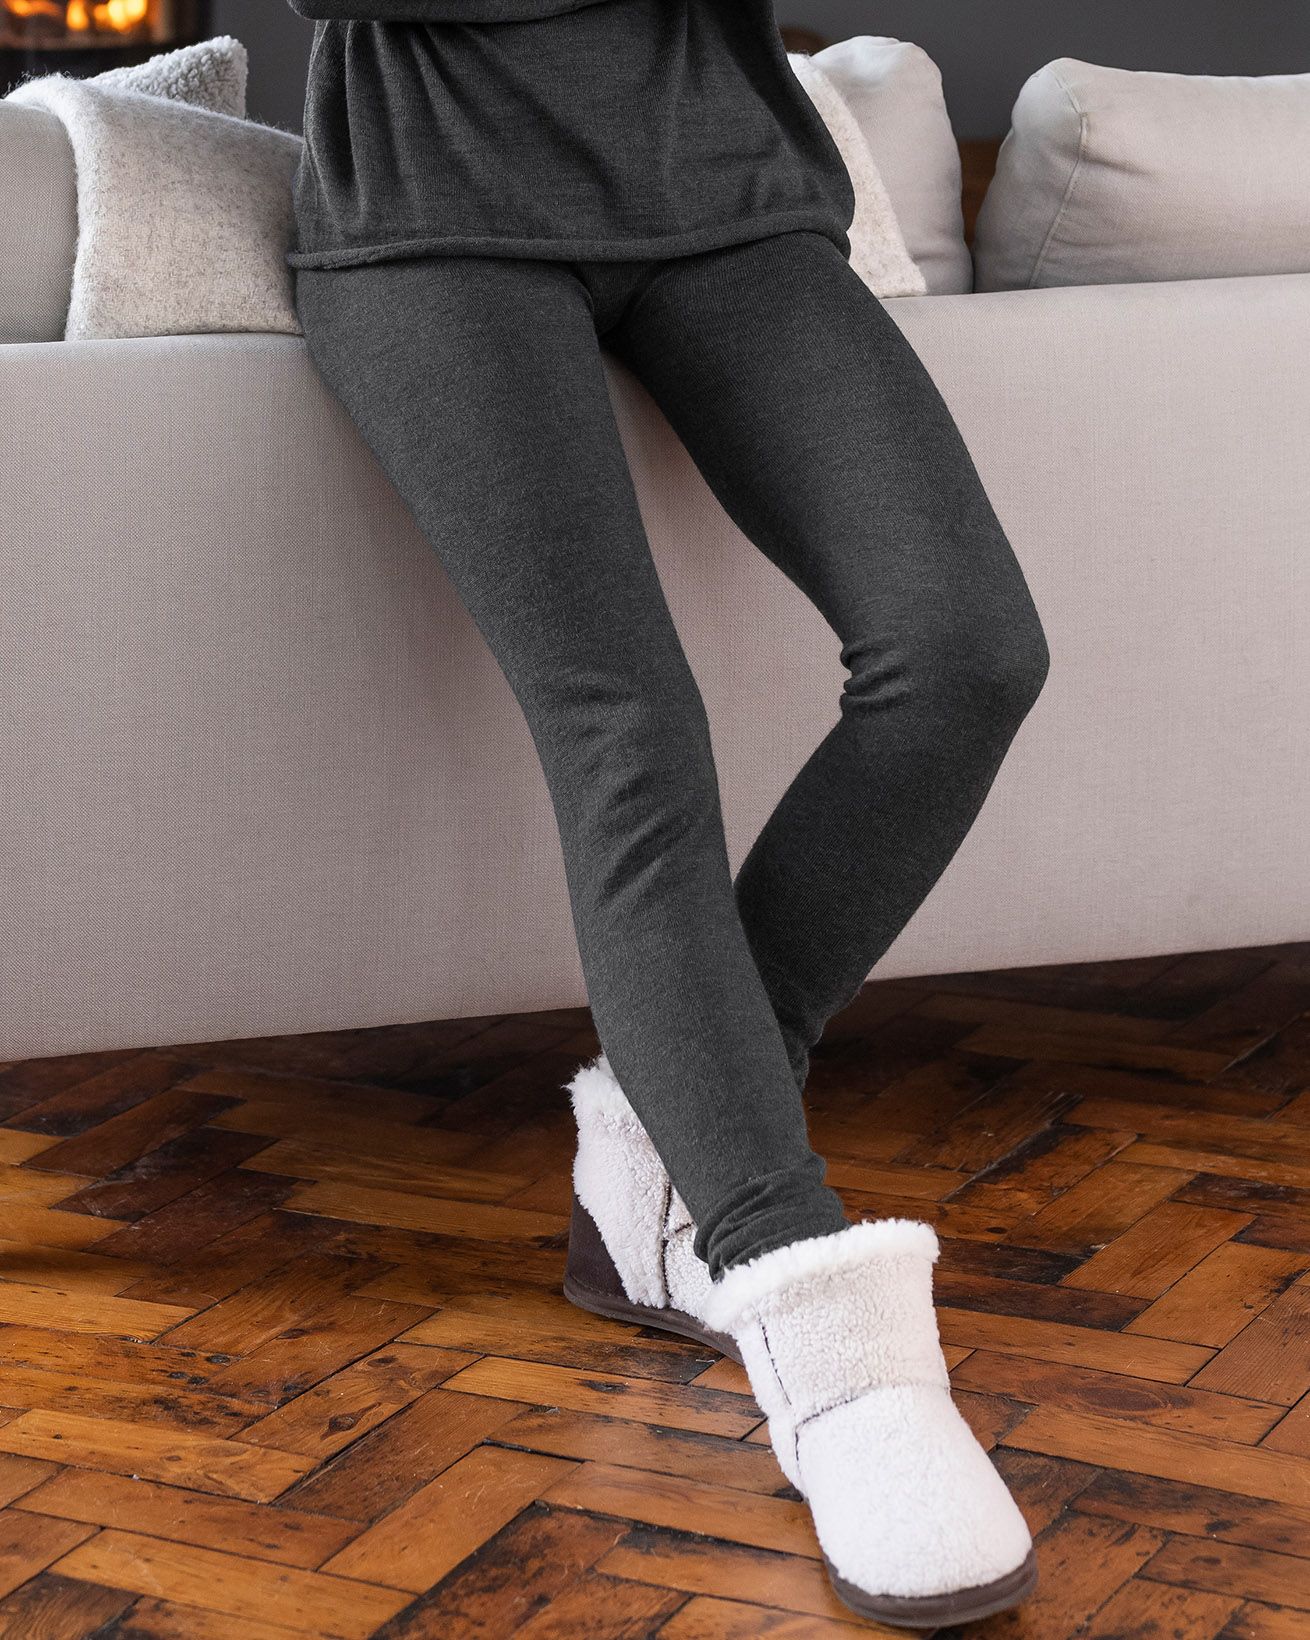 Sofra Leggings - Women's Seamless Fleece Lined Leggings - Black at